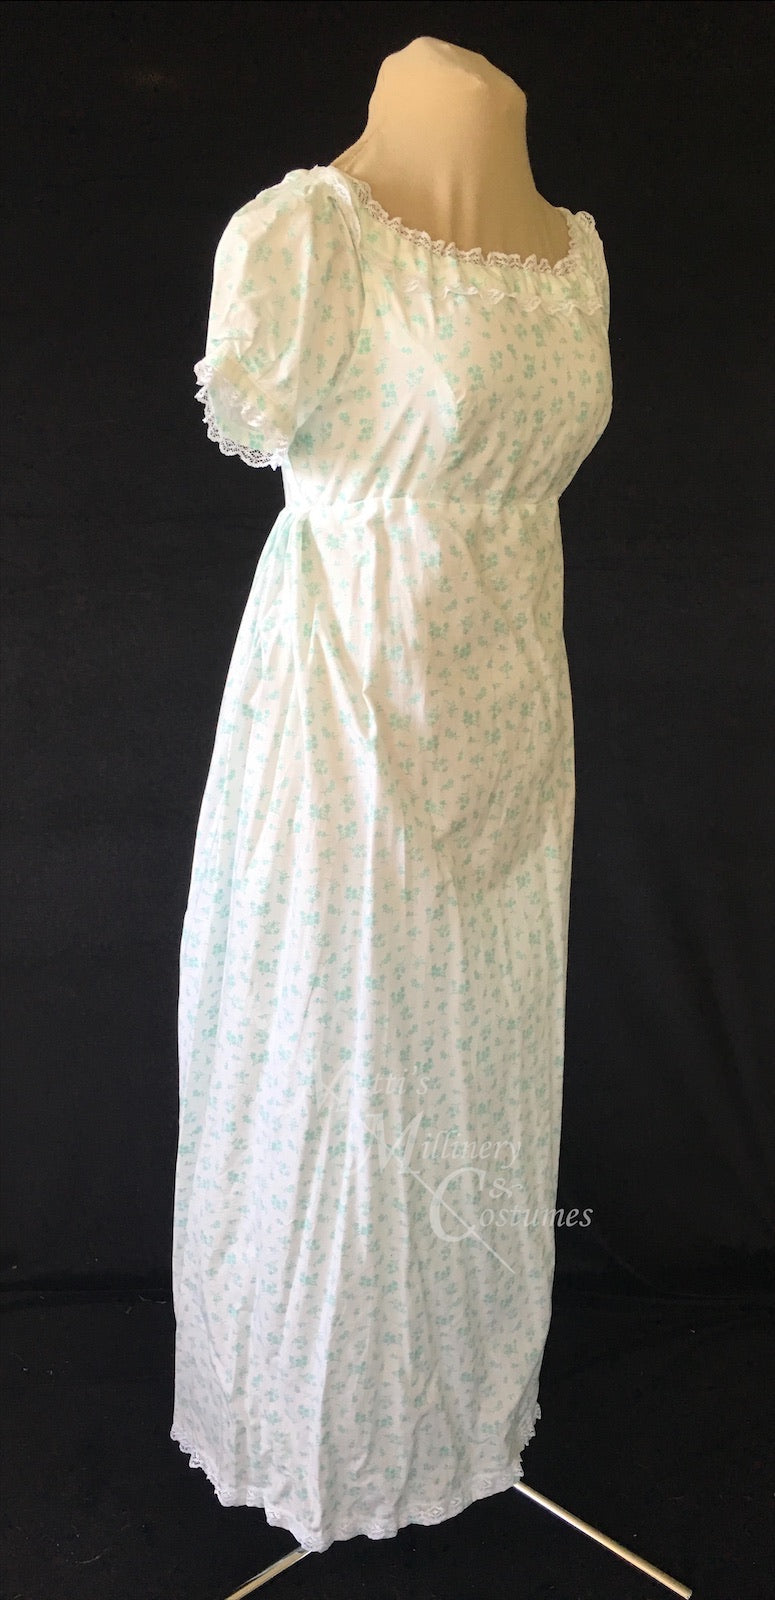 Cotton Regency Jane Austen Day Dress in mint green sprig print